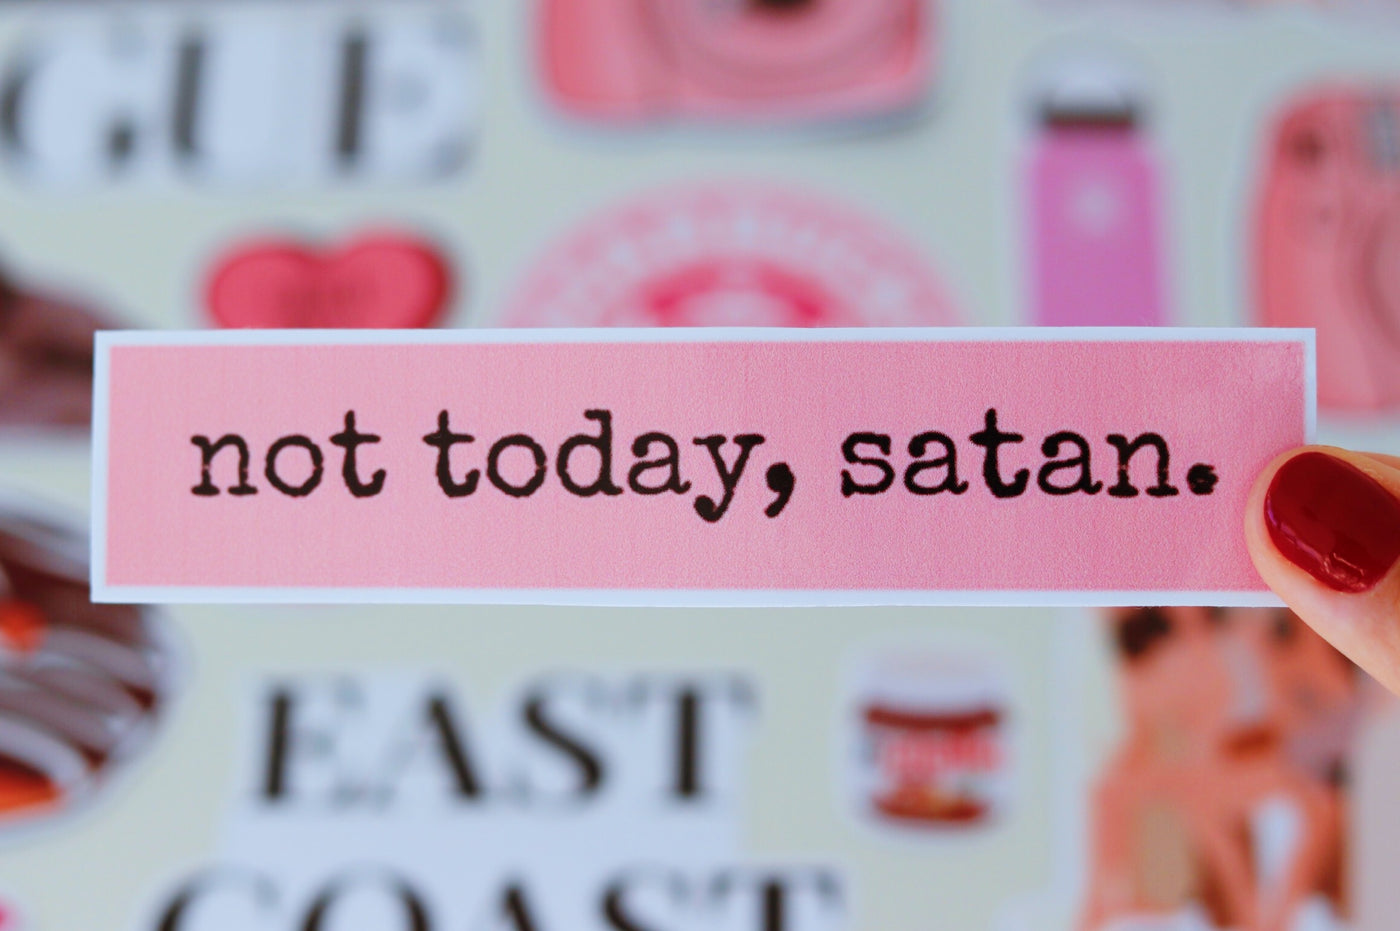 Not today, satan